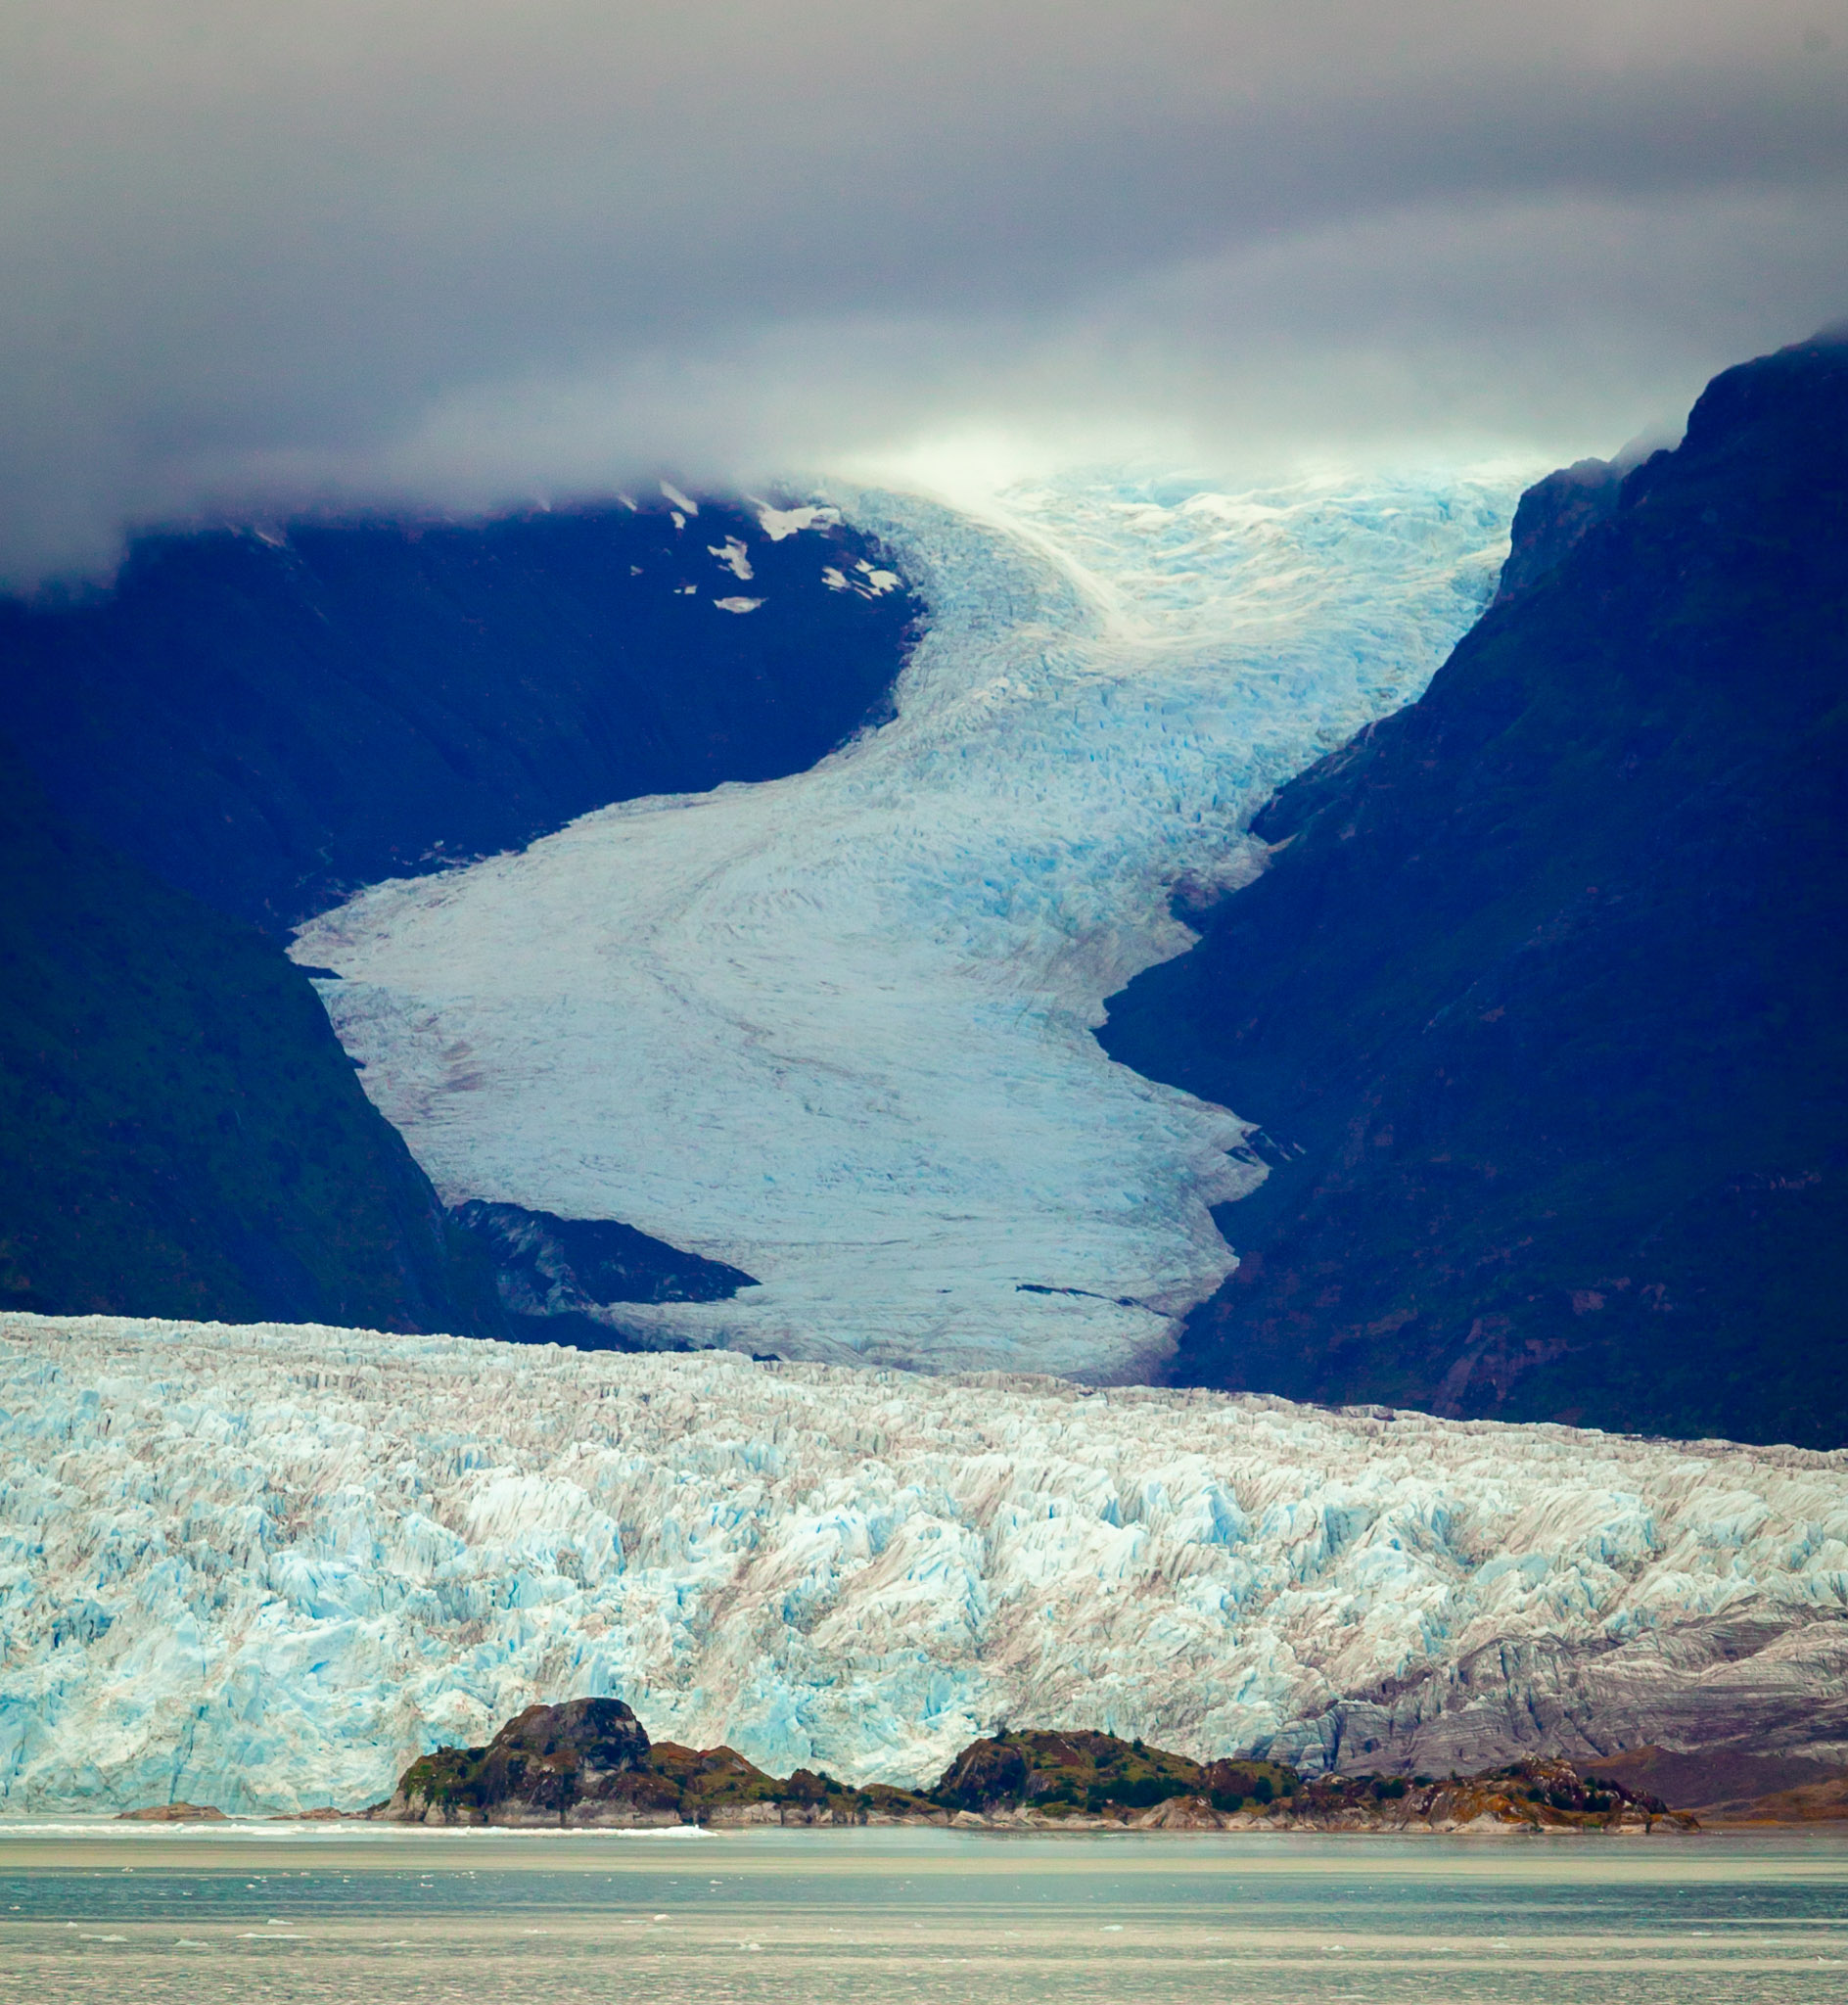 Skua Glacier and Amalia Bay, Chile